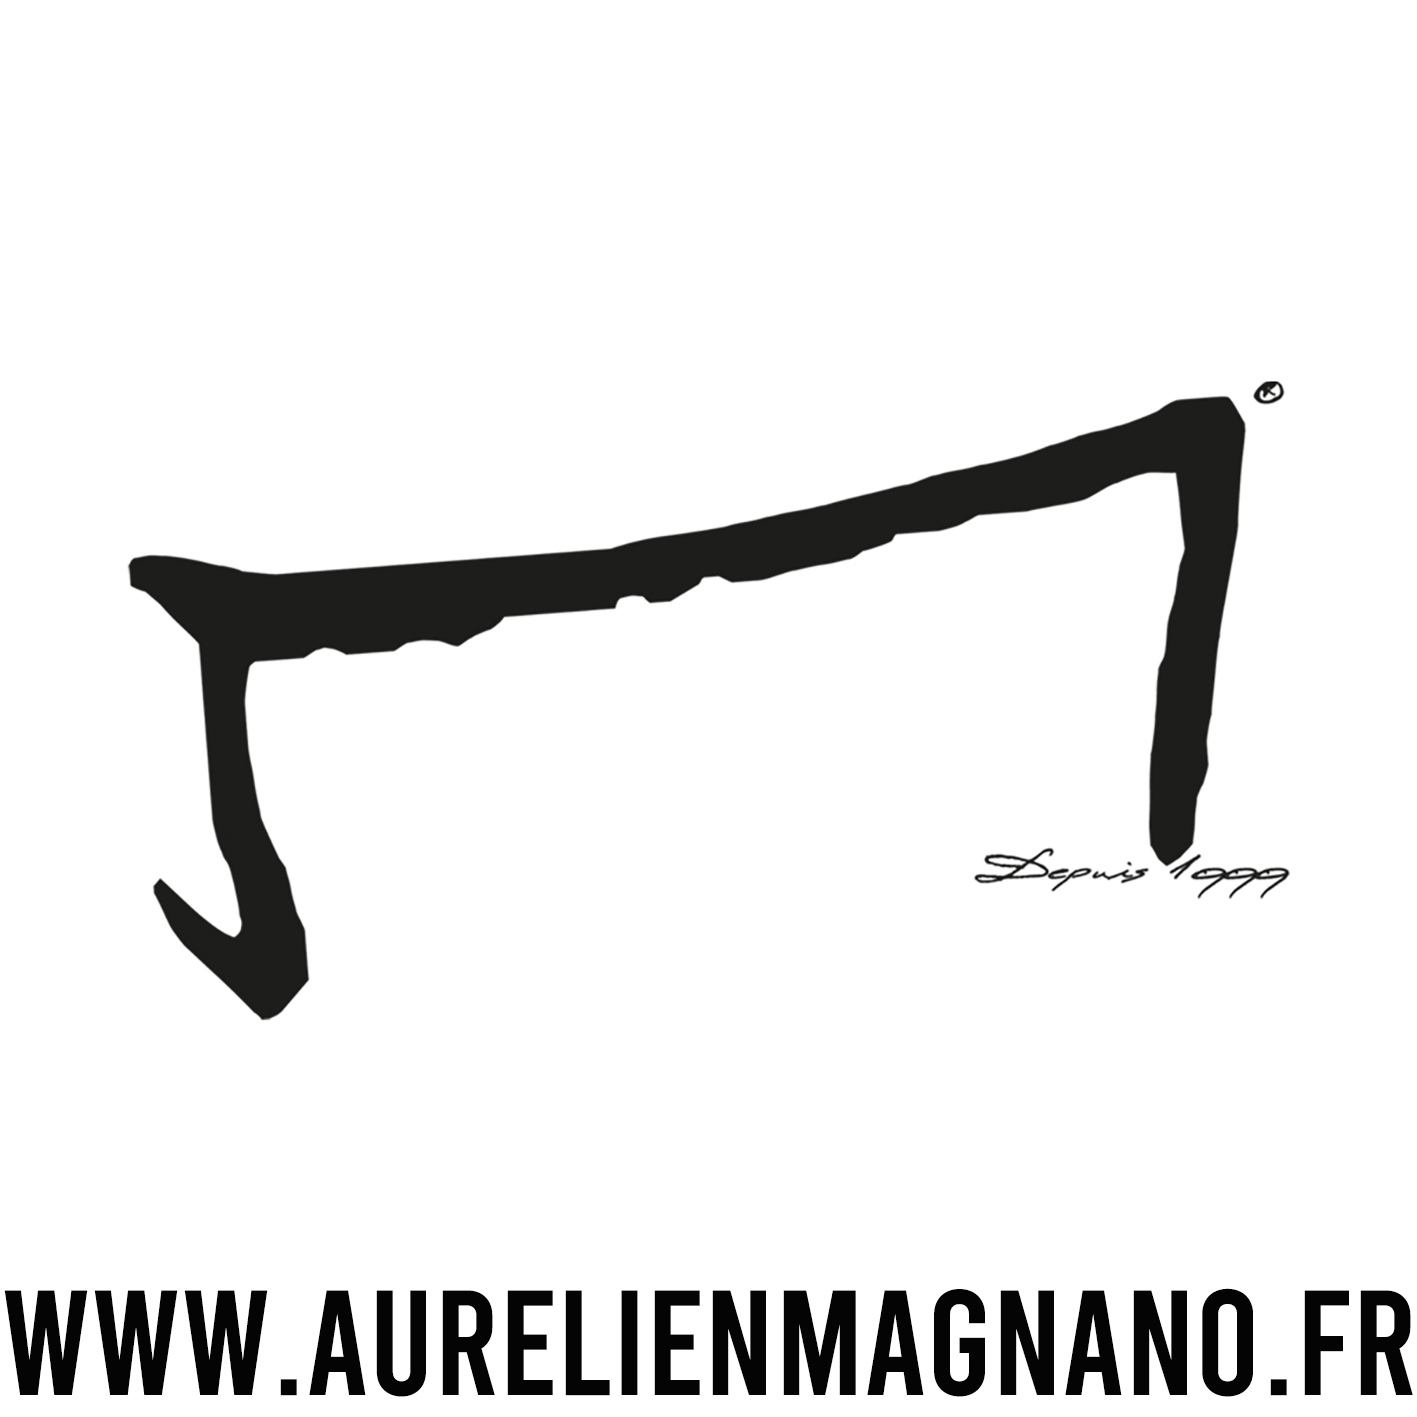 Le logo du salon de coiffure et barbier Aurelien Magnano